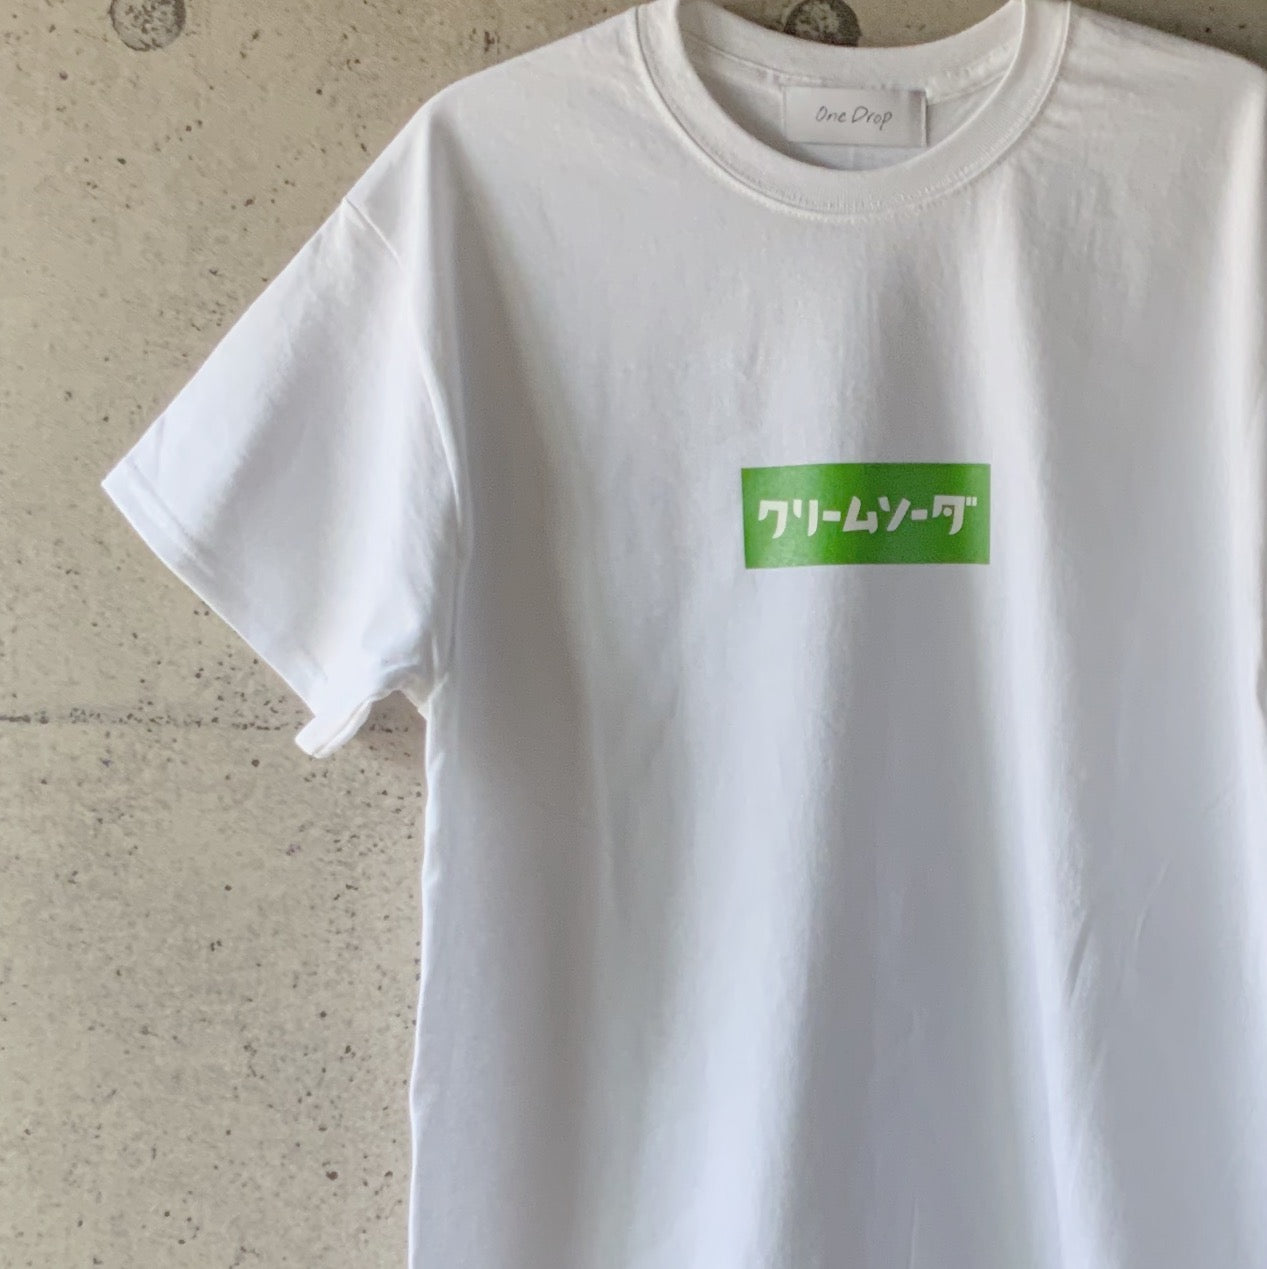 ふくだクリームソーダ T-shirt – One Drop（ワンドロップ）